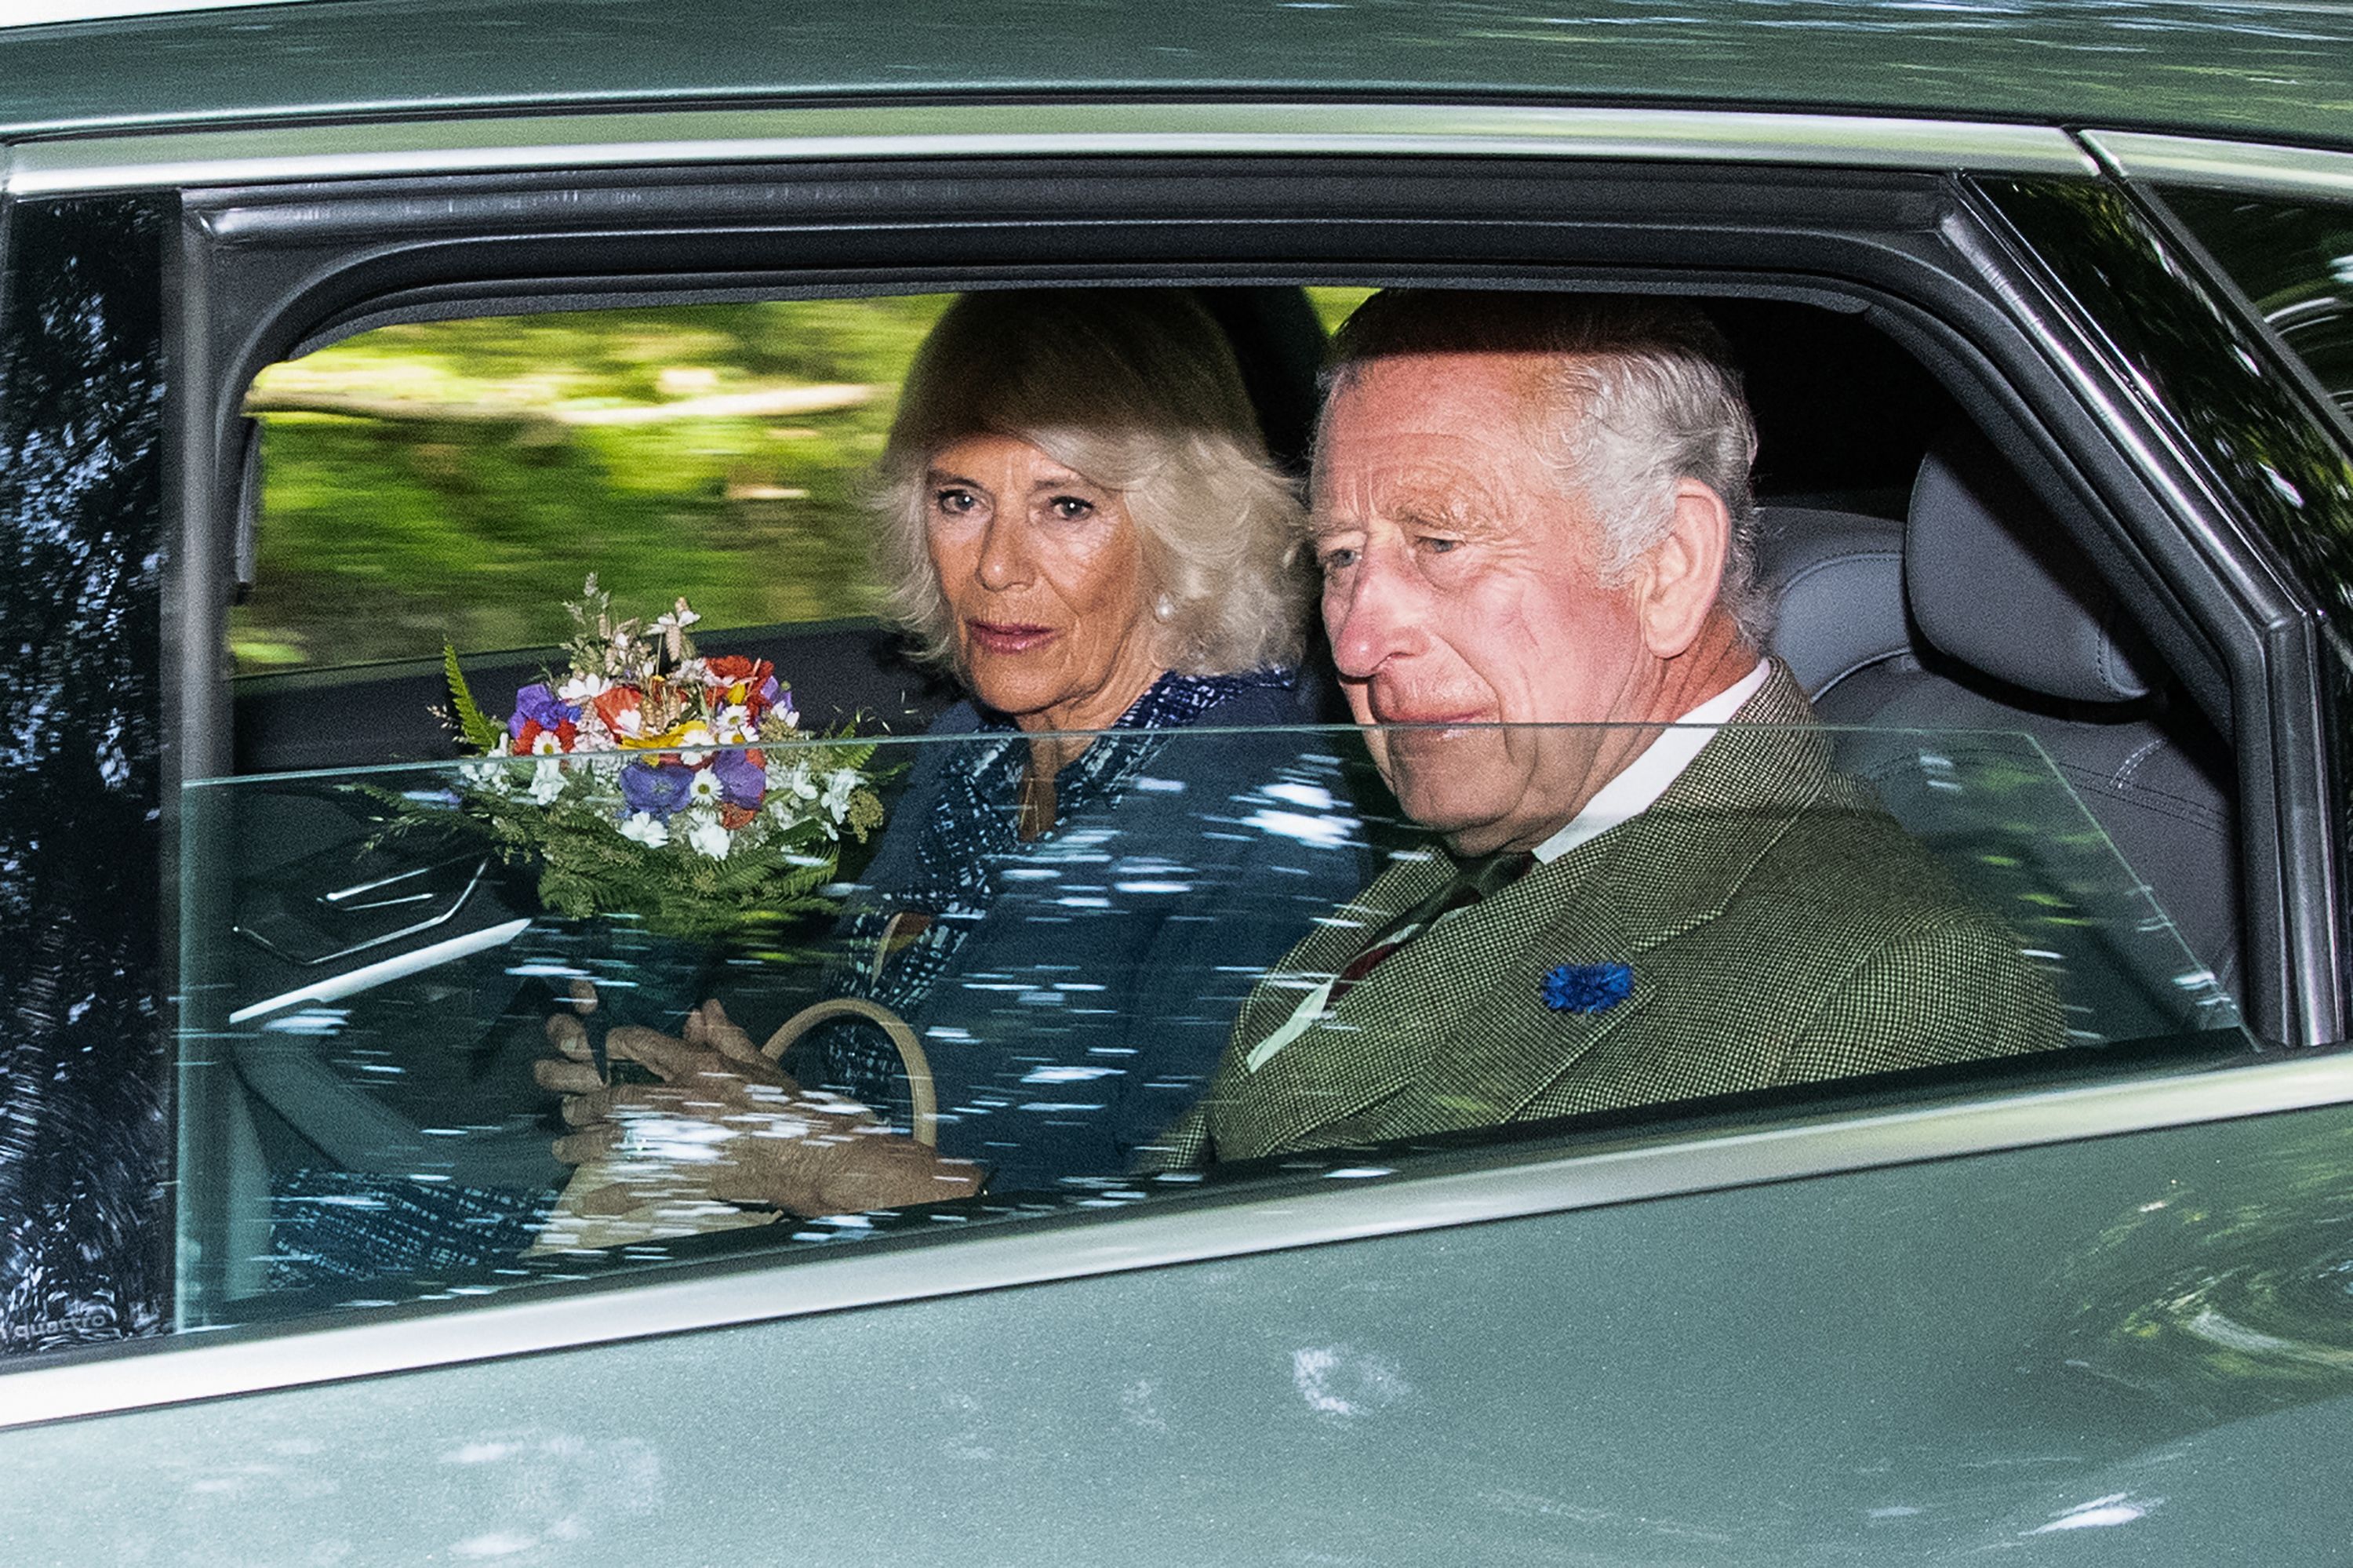 El rey Charles III y la reina Camilla salen tras asistir a la iglesia en el pueblo de Crathie, cerca de Balmoral, el 8 de septiembre de 2023 | Foto: Getty Images